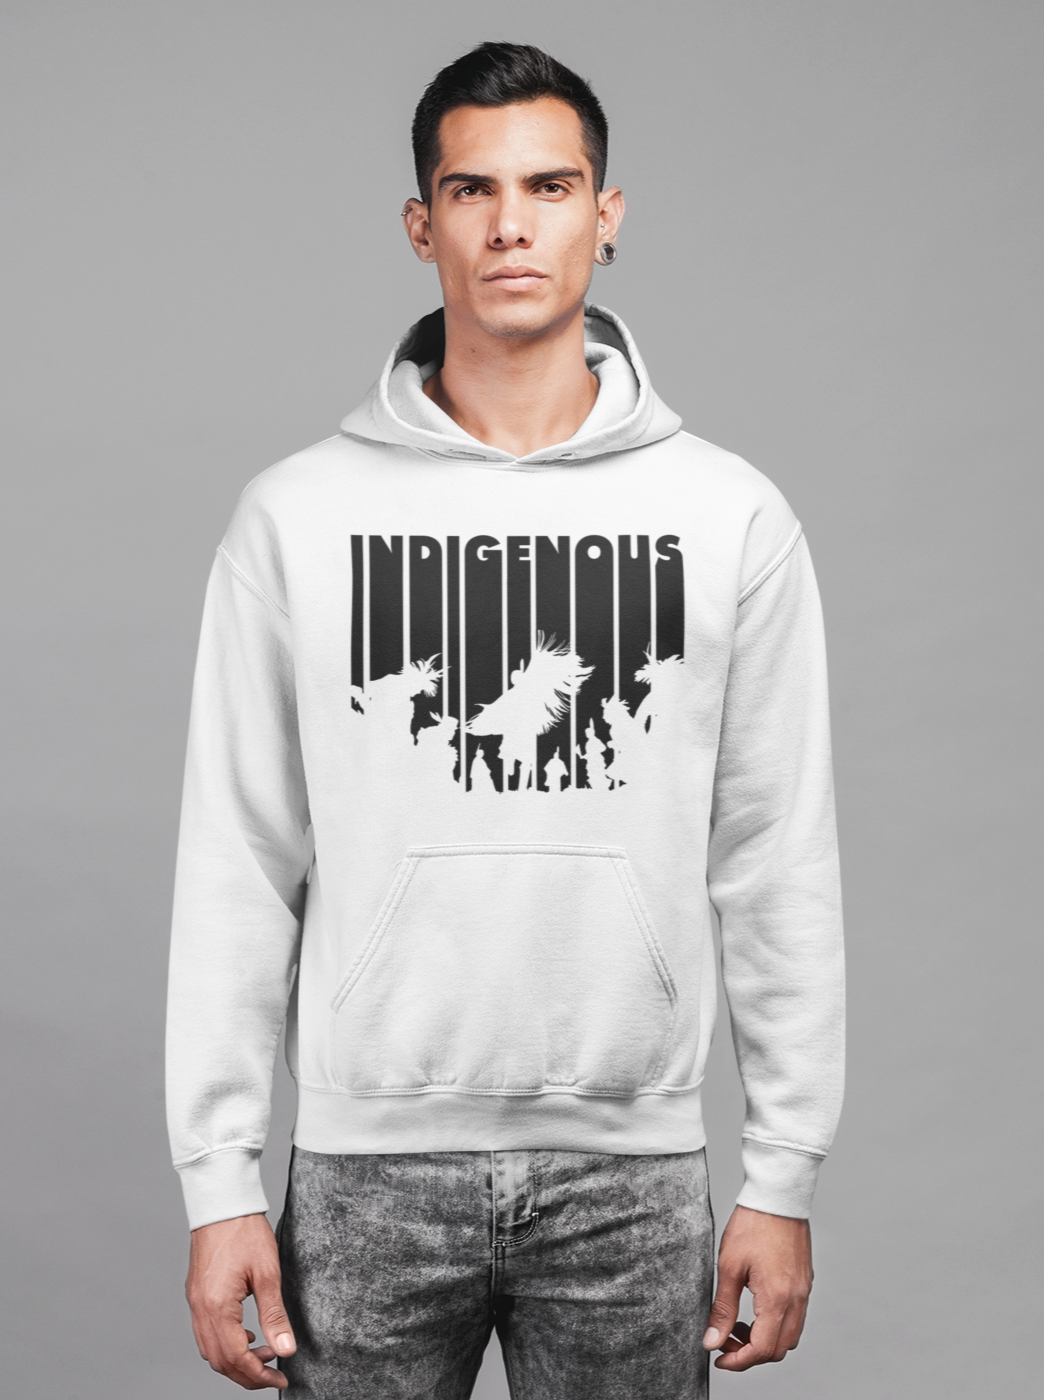 Indigenous Intertribal Hoodie - Black Ink on White